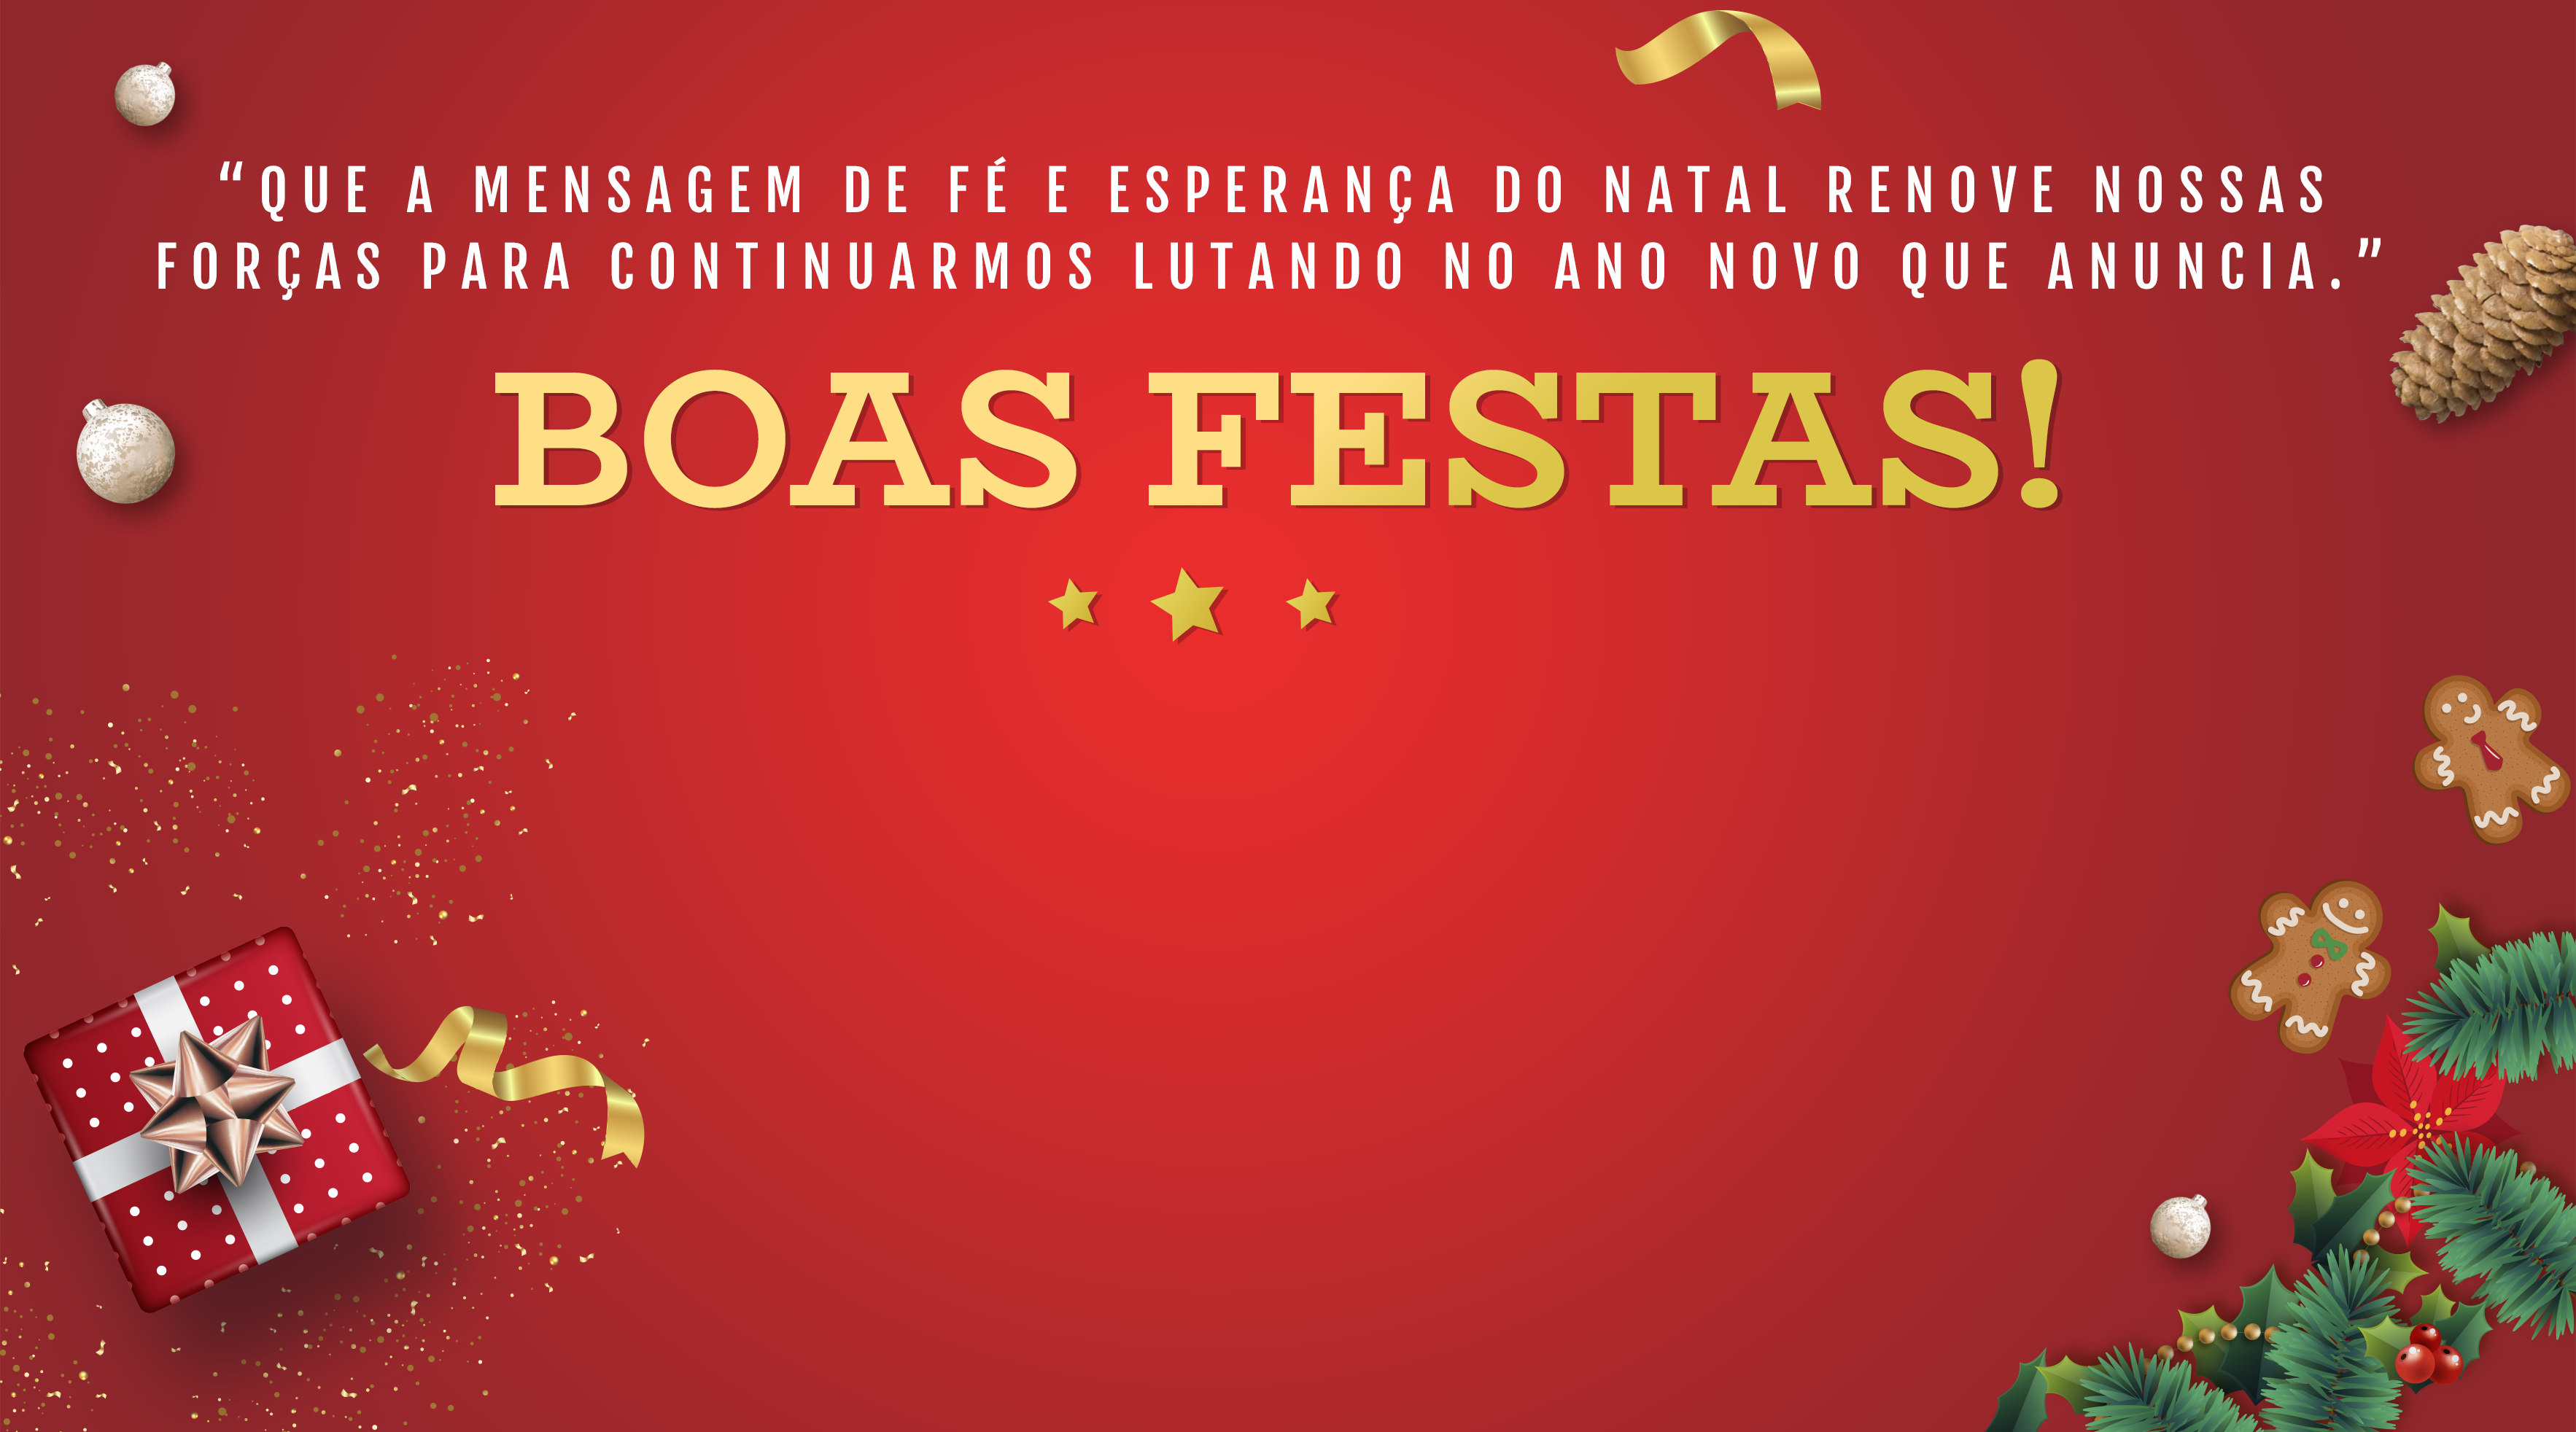 Presidente Clícia deixa mensagem de boas festas aos Servidores de Itaquá -  Servidores de Itaquaquecetuba